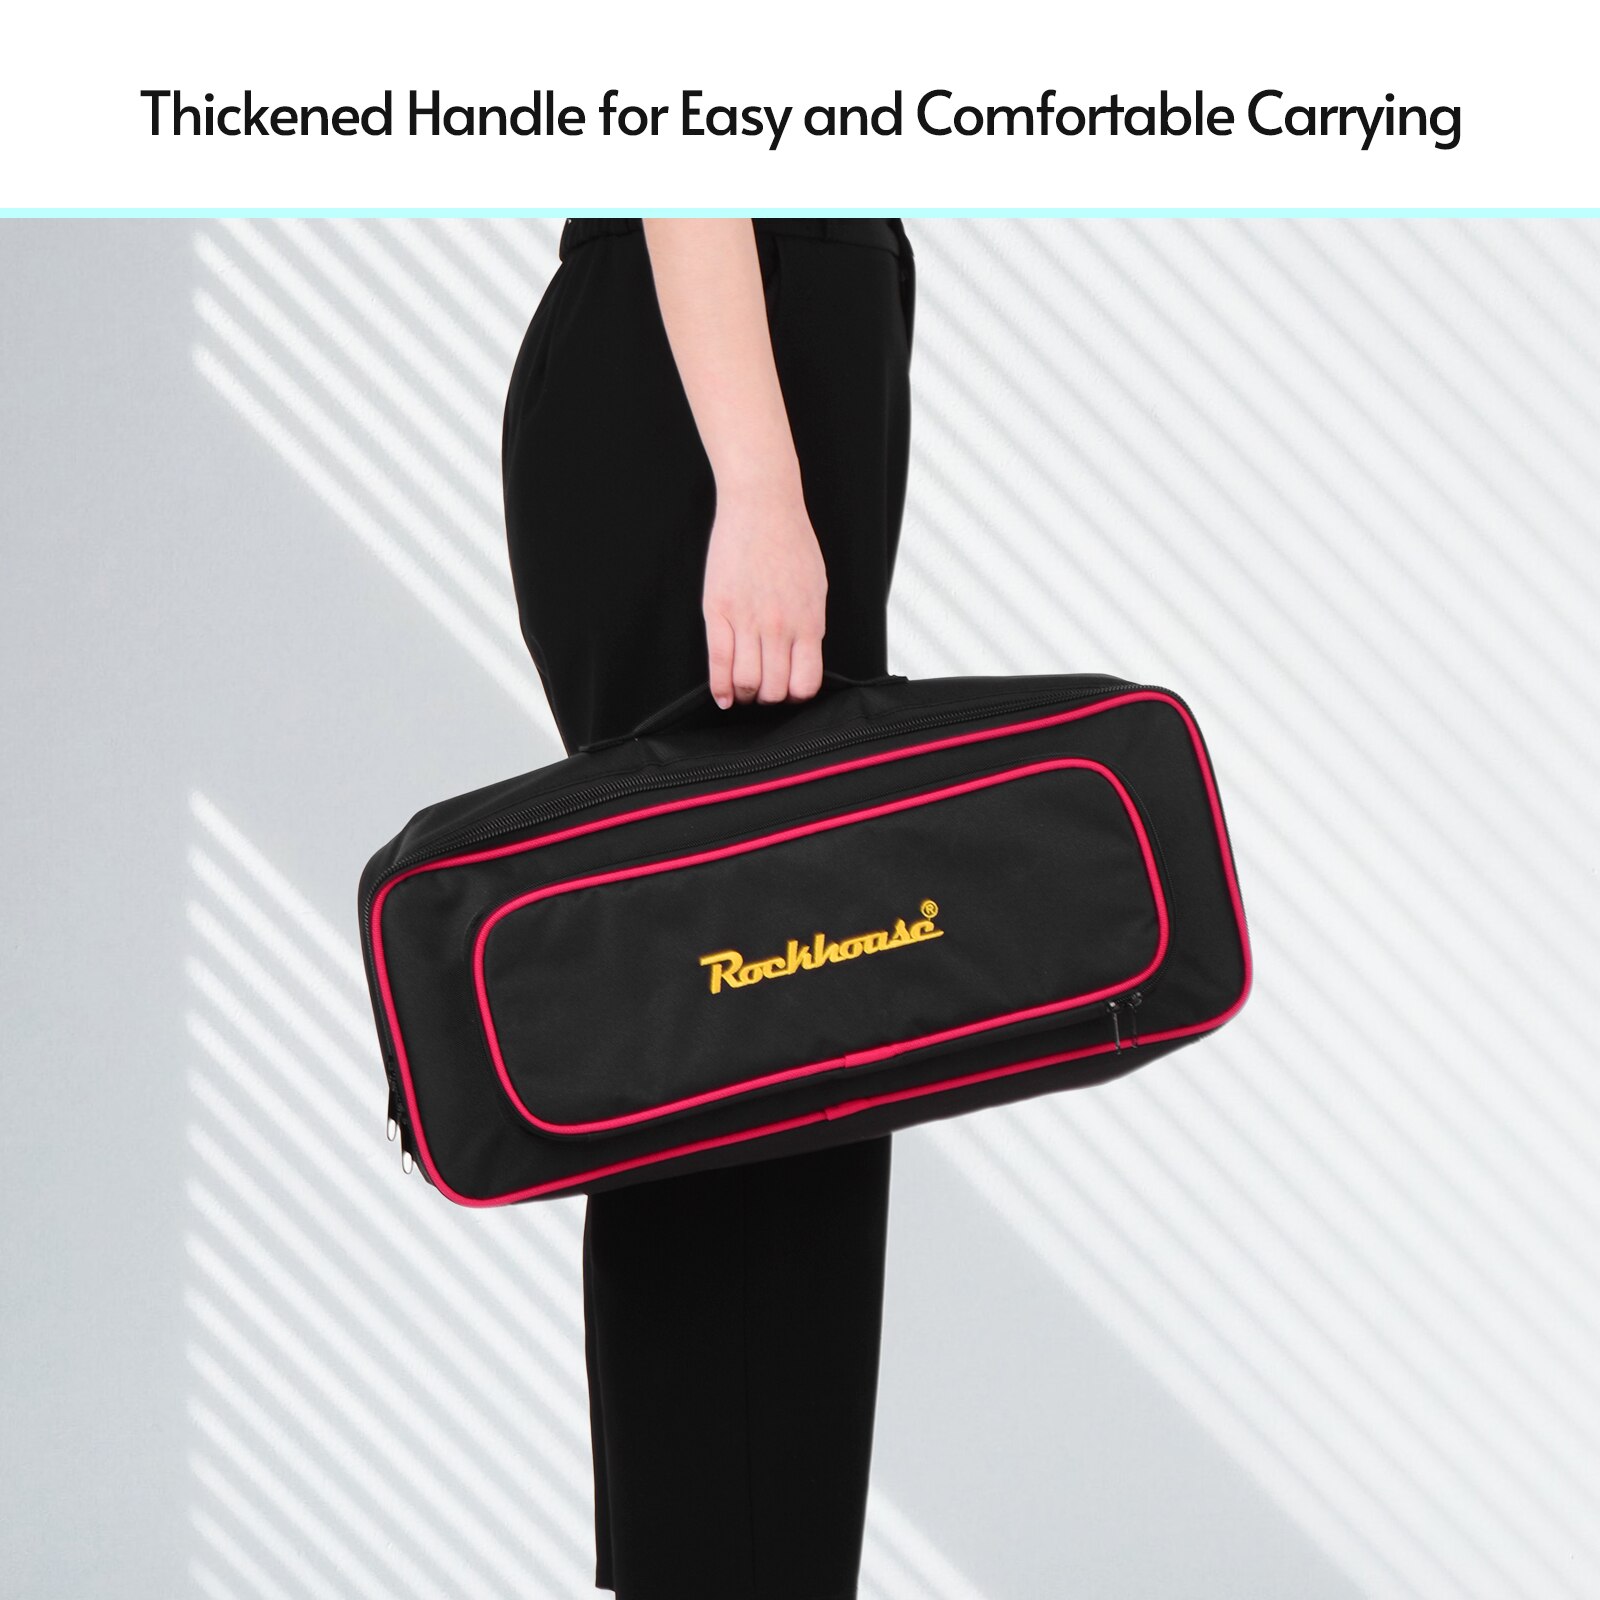 Rockhouse håndholdt gig taske bæretaske pedalbræt taske til rpb -3 effekt pedalbræt til  gt1/ gt1b integrerede effektpedaler